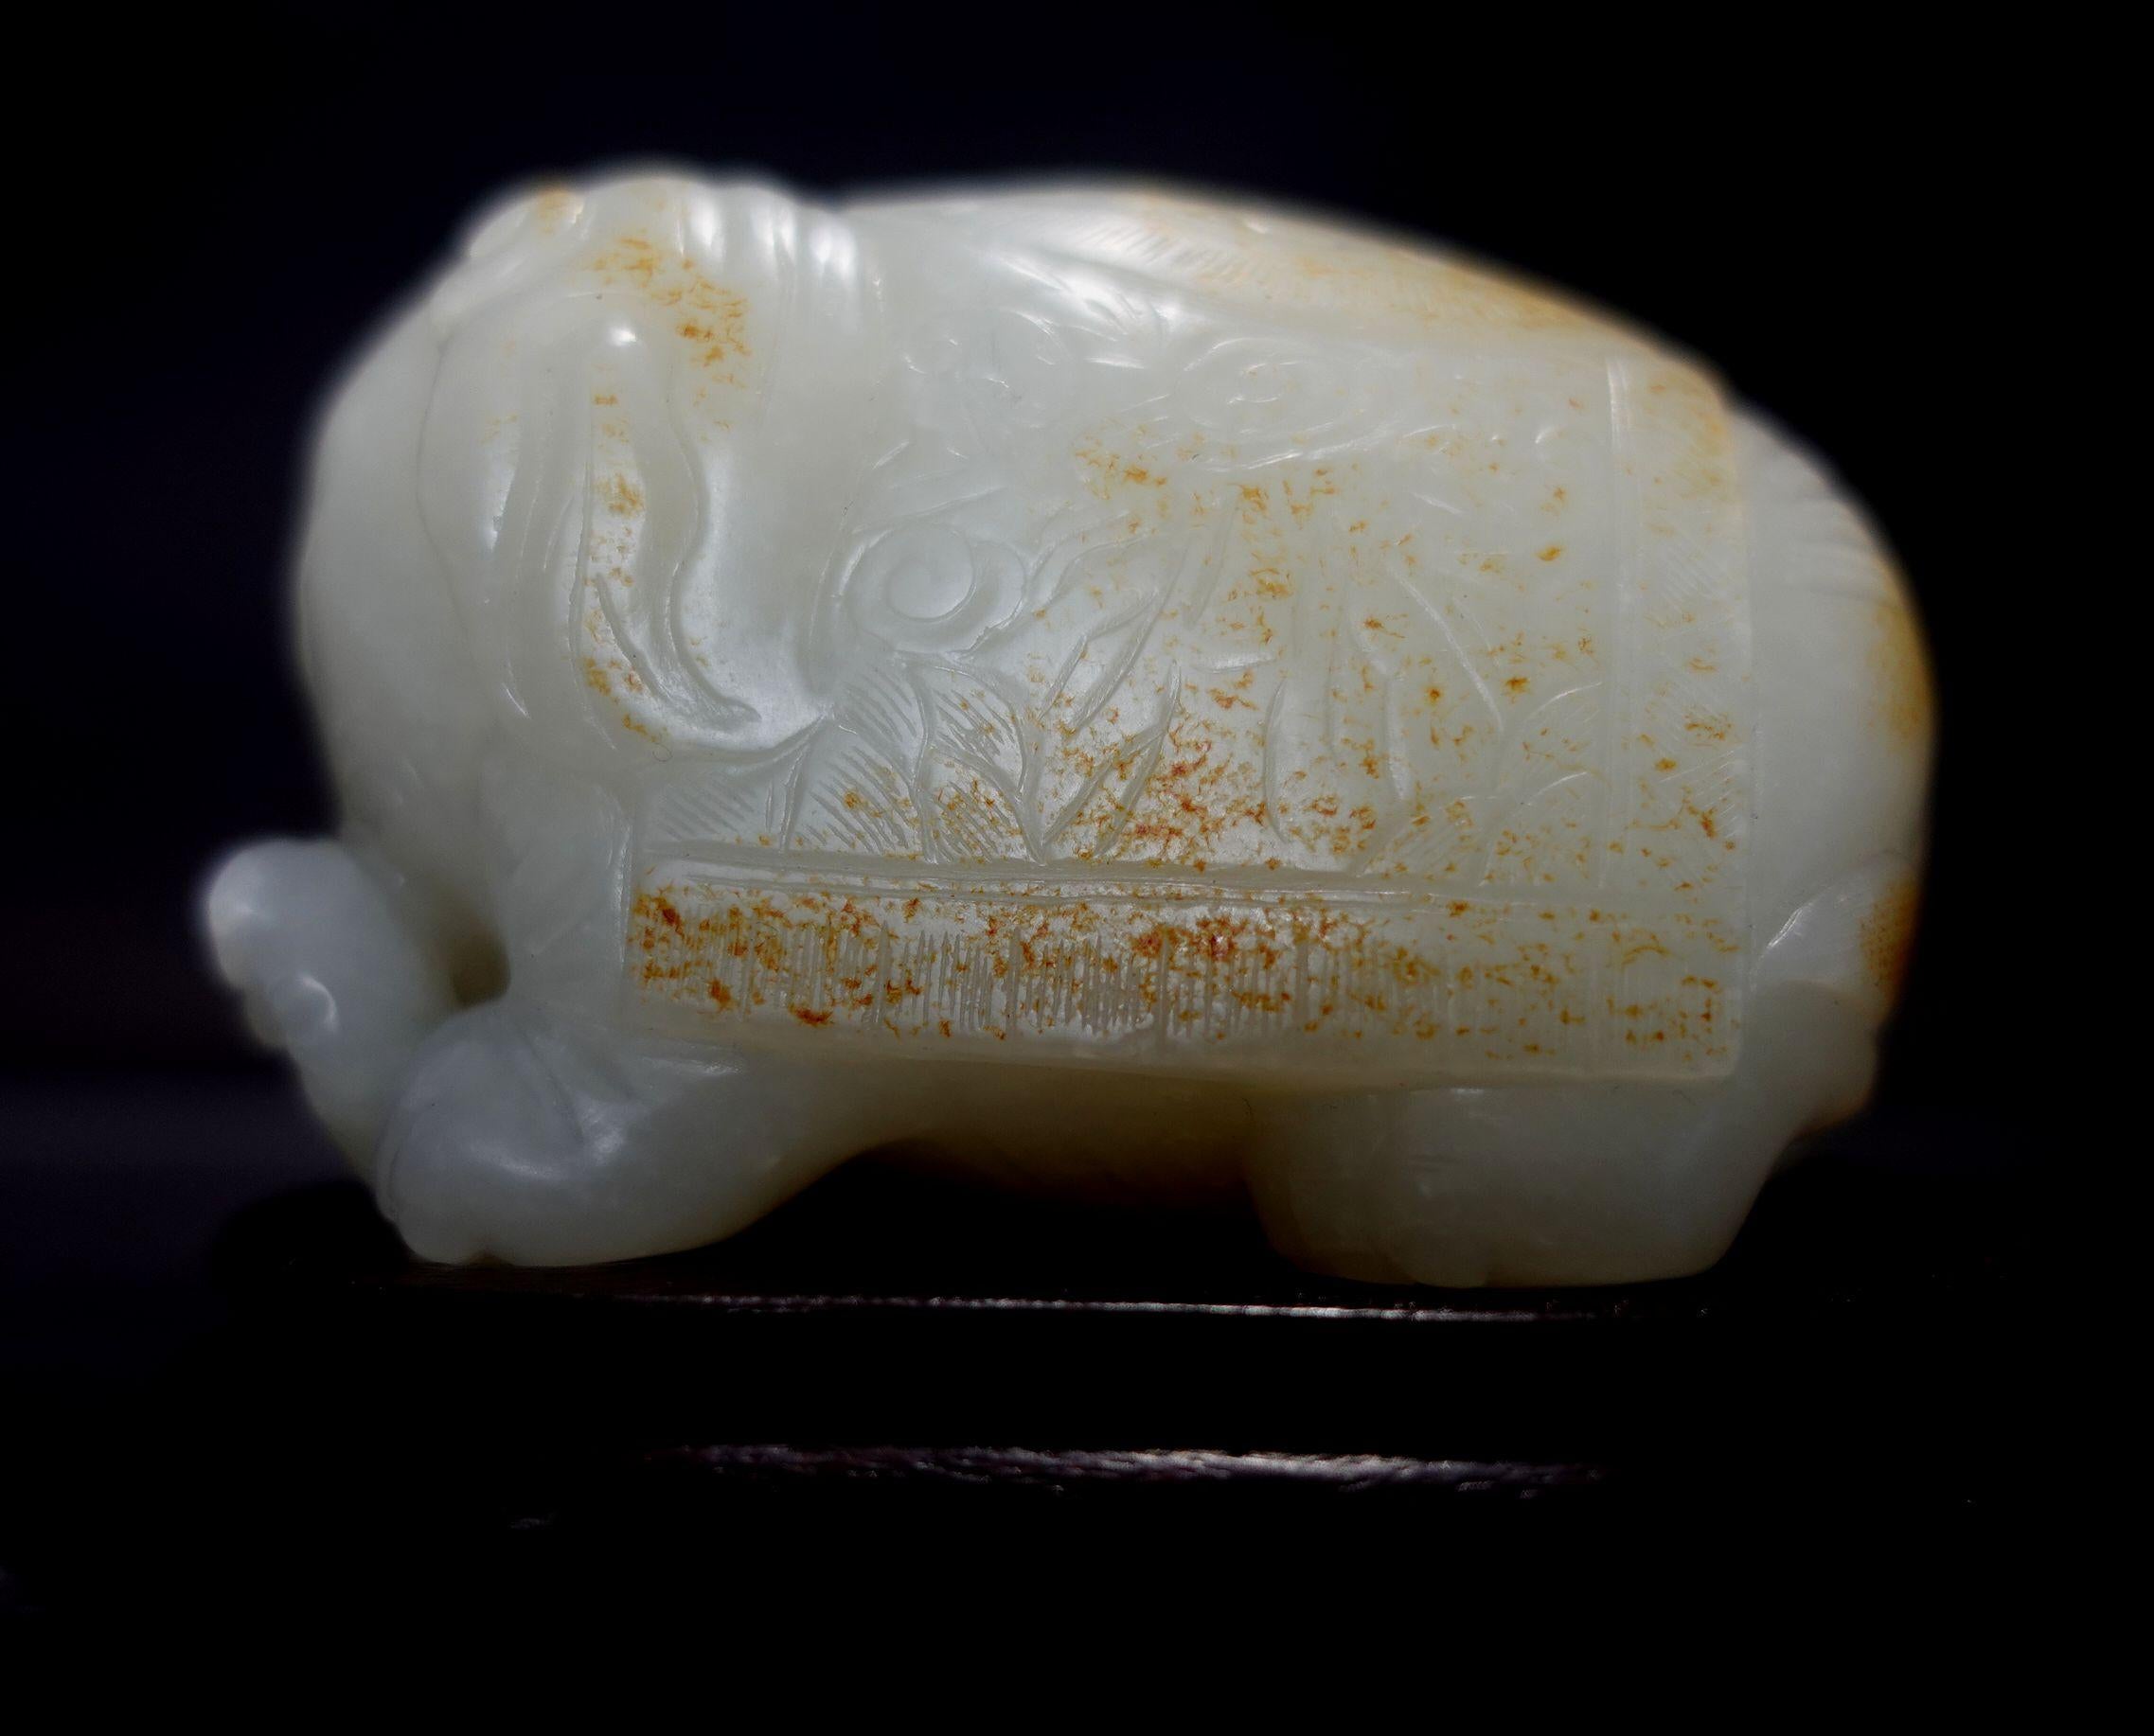 Un joli et mignon objet antique sculpté à la main, lourd et gras, sculpté en Chine.  Jade blanc Hetain avec des marques rousses, très pur et propre dans le contenu du corps avec l'apparence de la graisse de mouton, tenant sur la main avec une